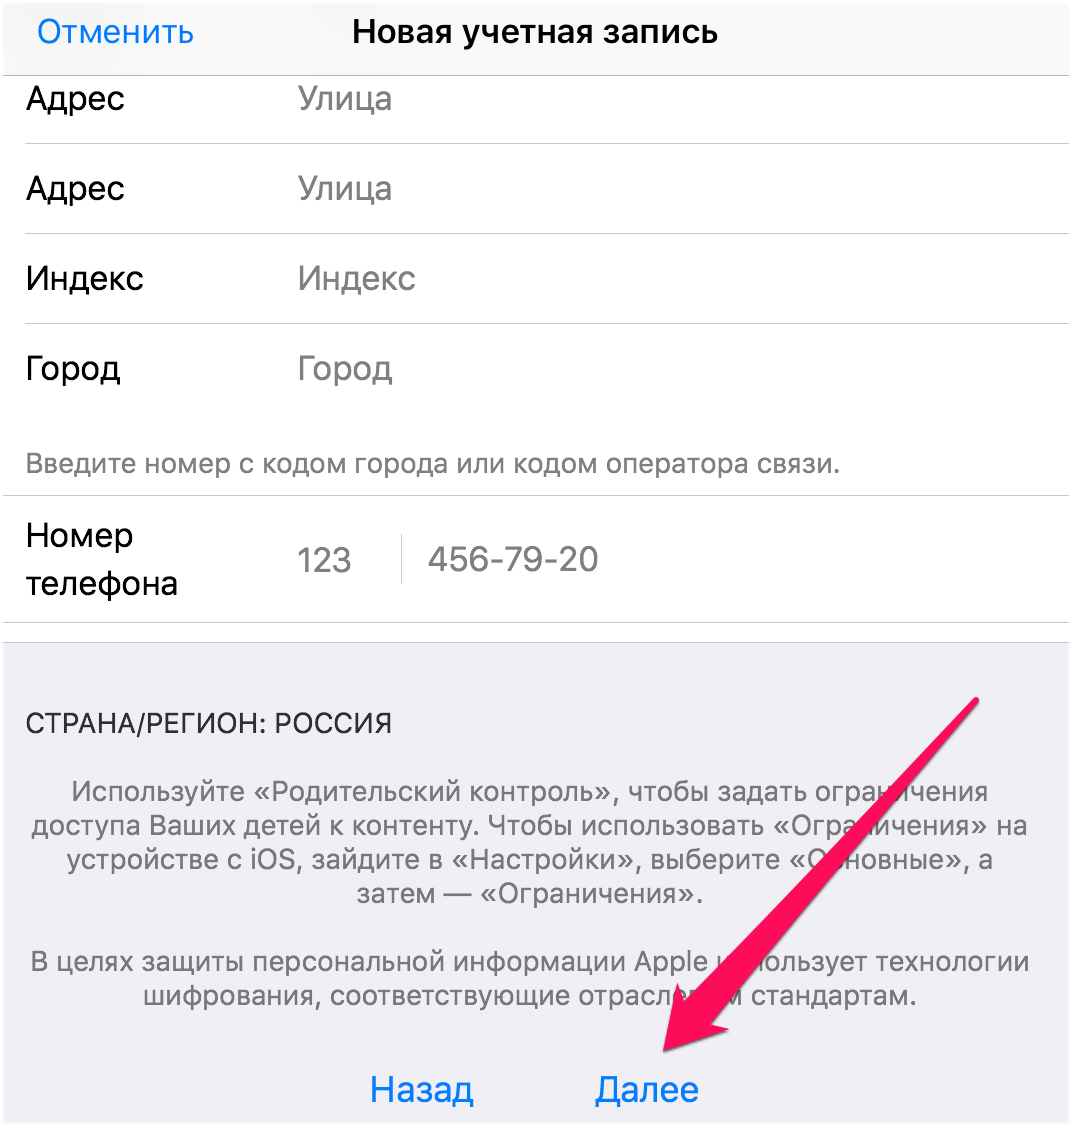 Как создать аккаунт в App Store (Apple ID)